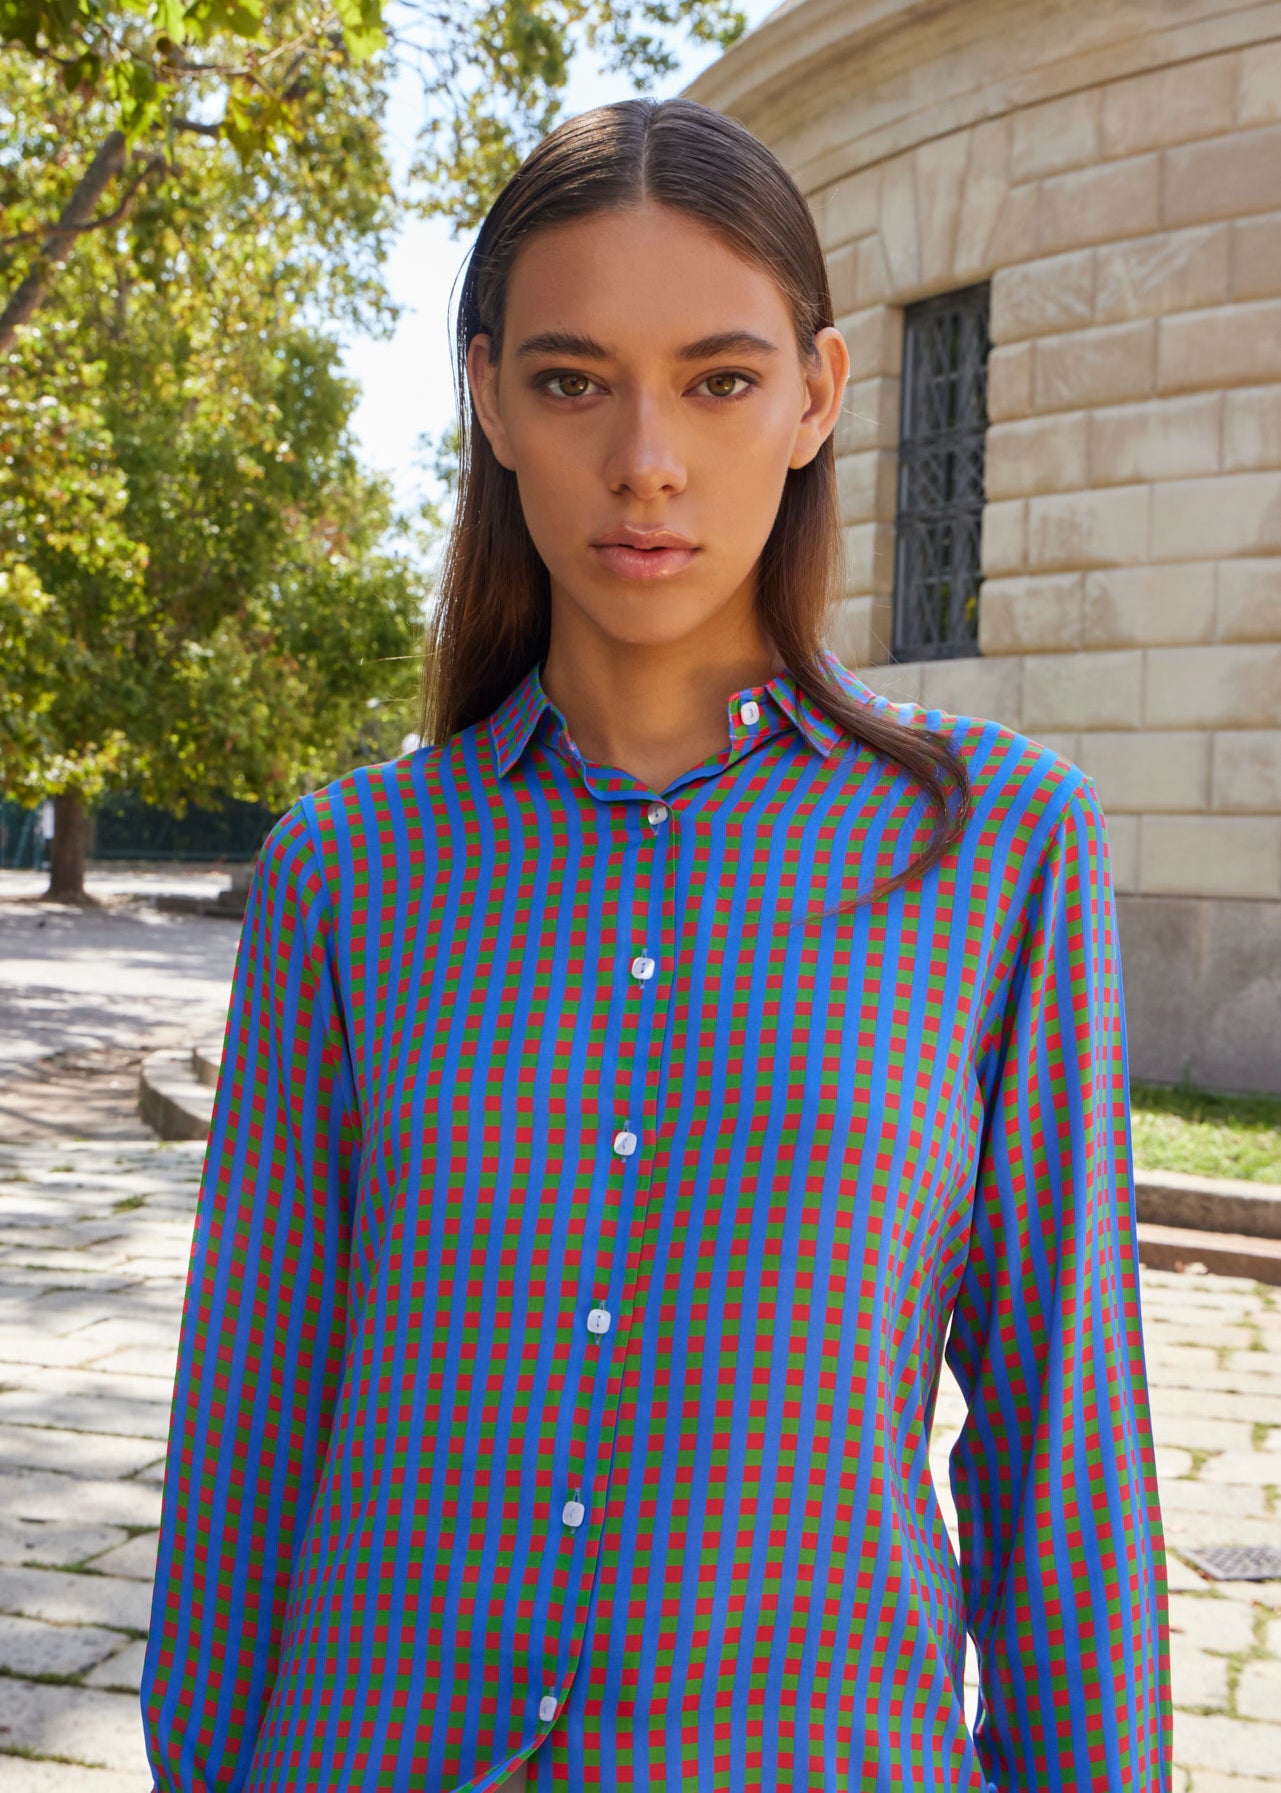 Camicie bluse camicette particolari eleganti e colorate per donna fatte a mano in Italia